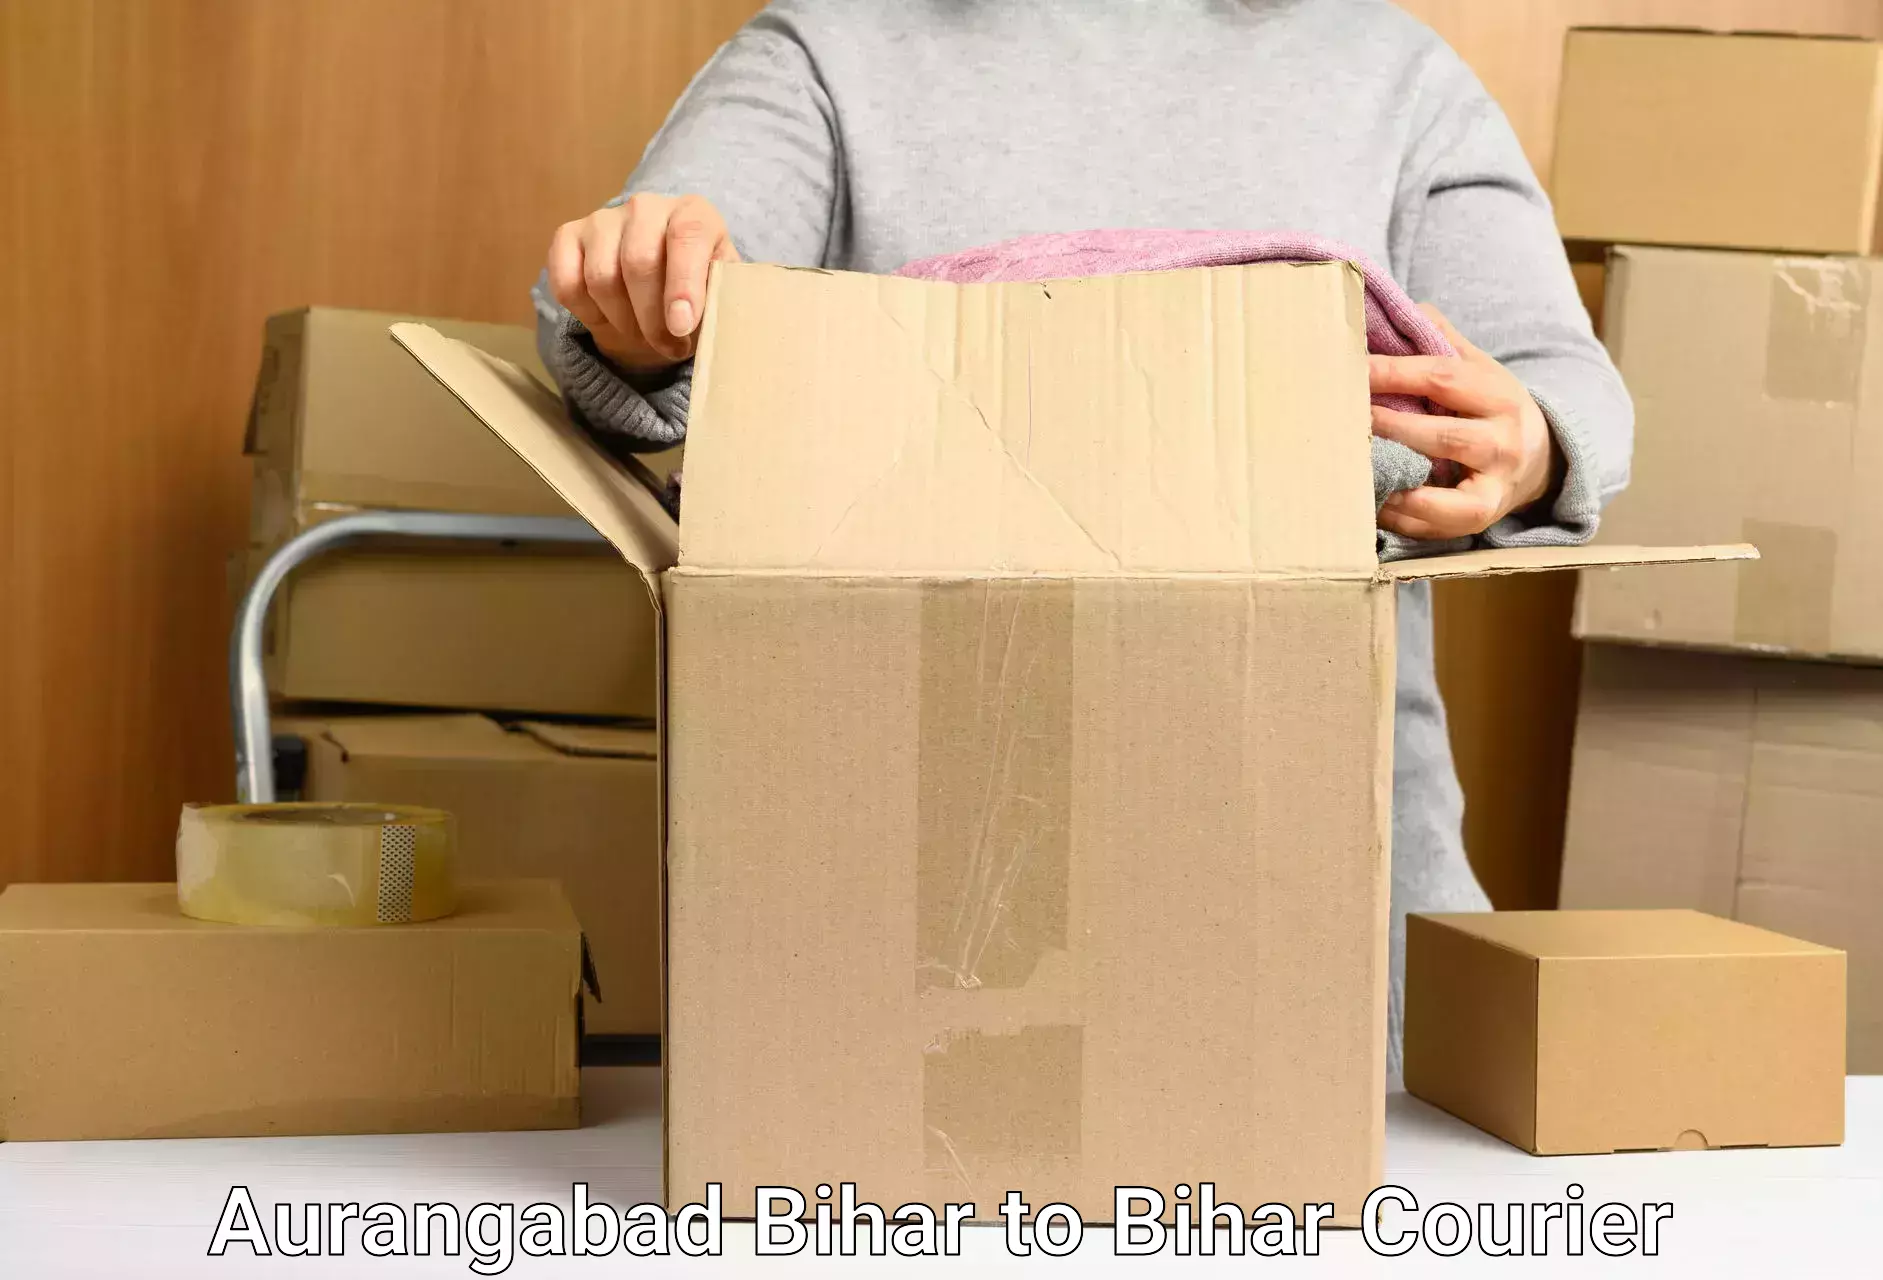 High-capacity courier solutions Aurangabad Bihar to Bihar